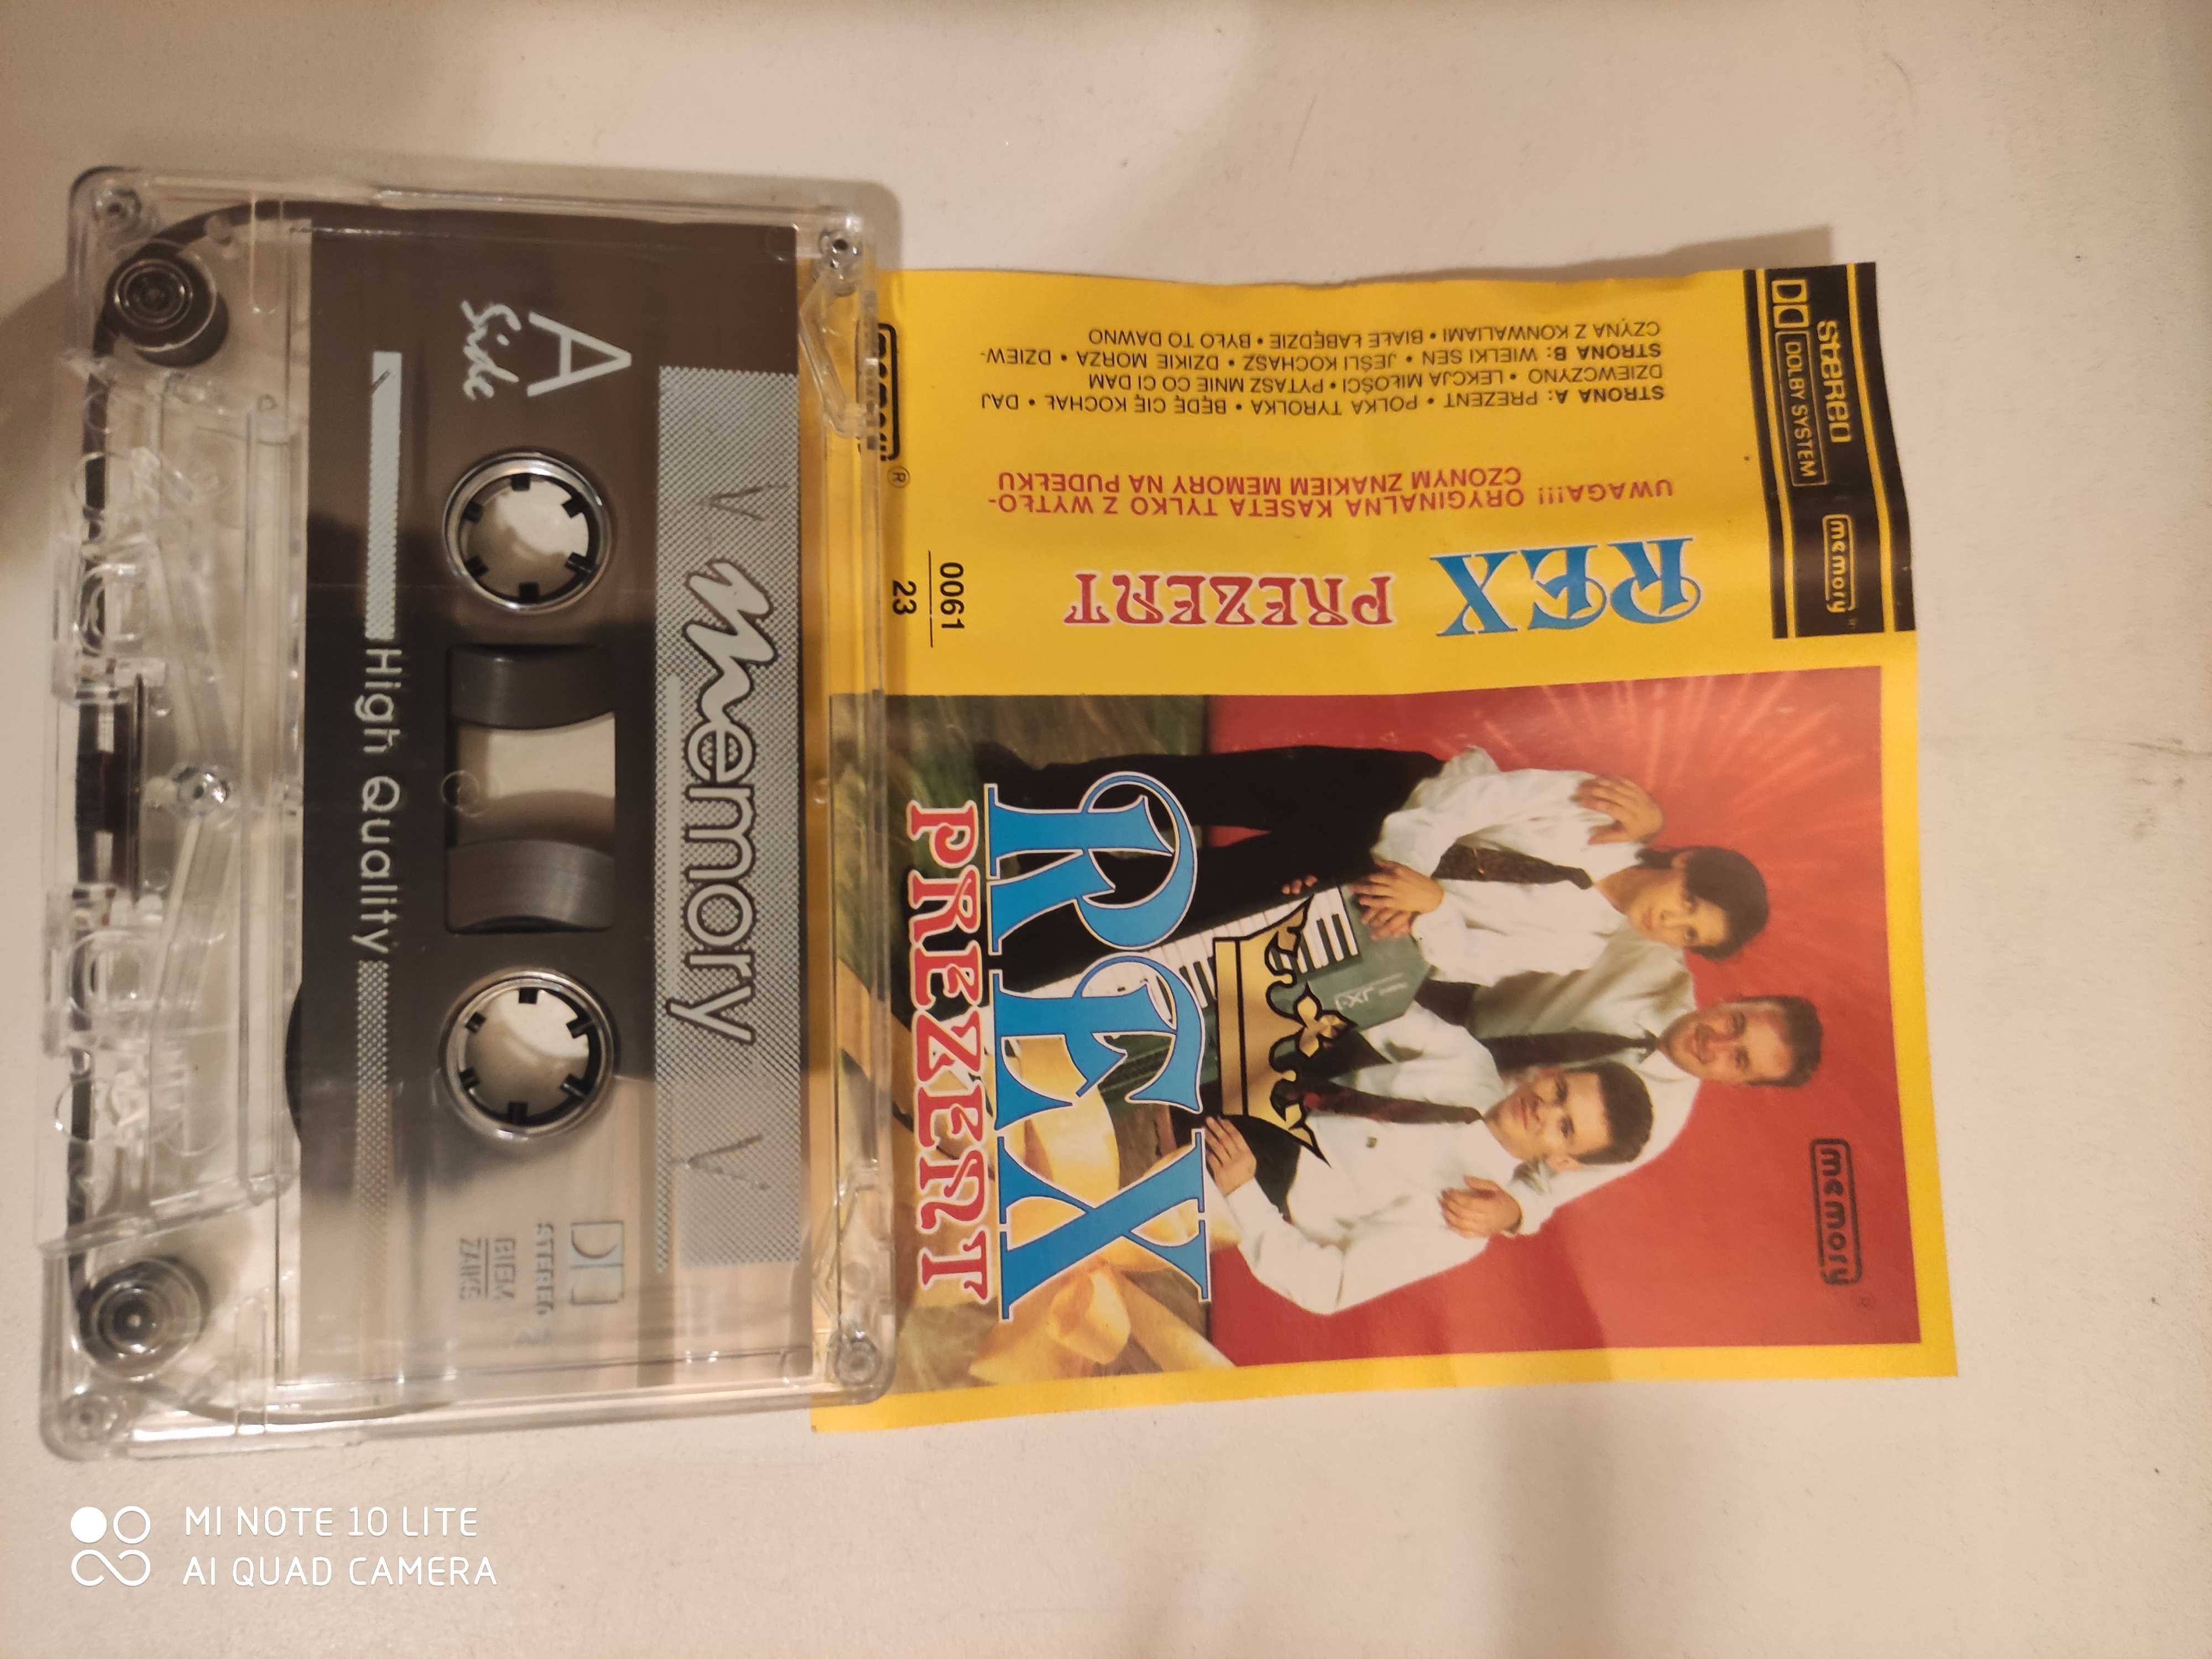 Disco polo Rex ,Alias, Bayer Full zestaw 3 kaset